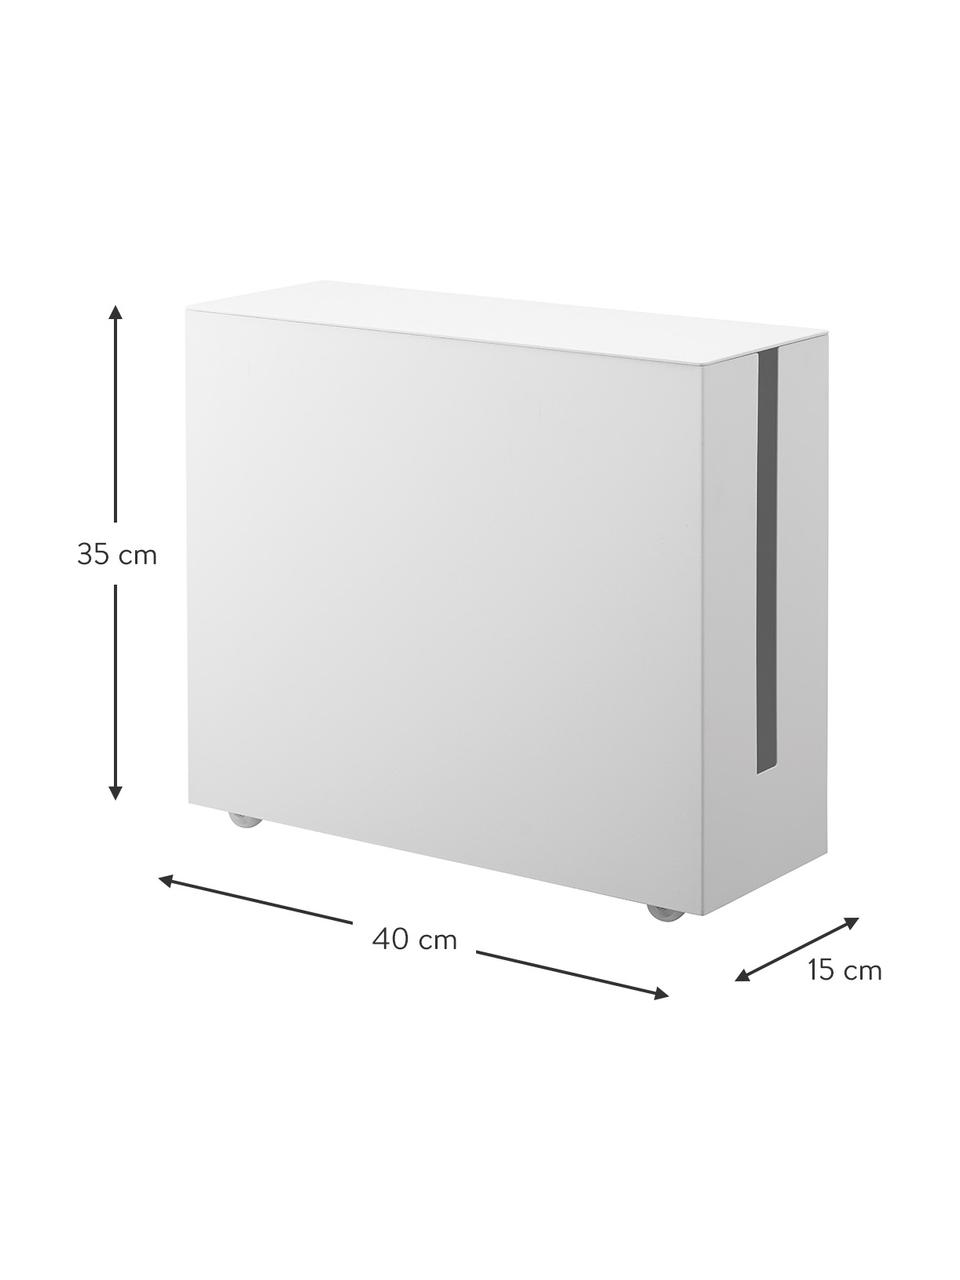 Pudełko na kable Tower, Metal malowany proszkowo, Biały, S 15 x W 35 cm